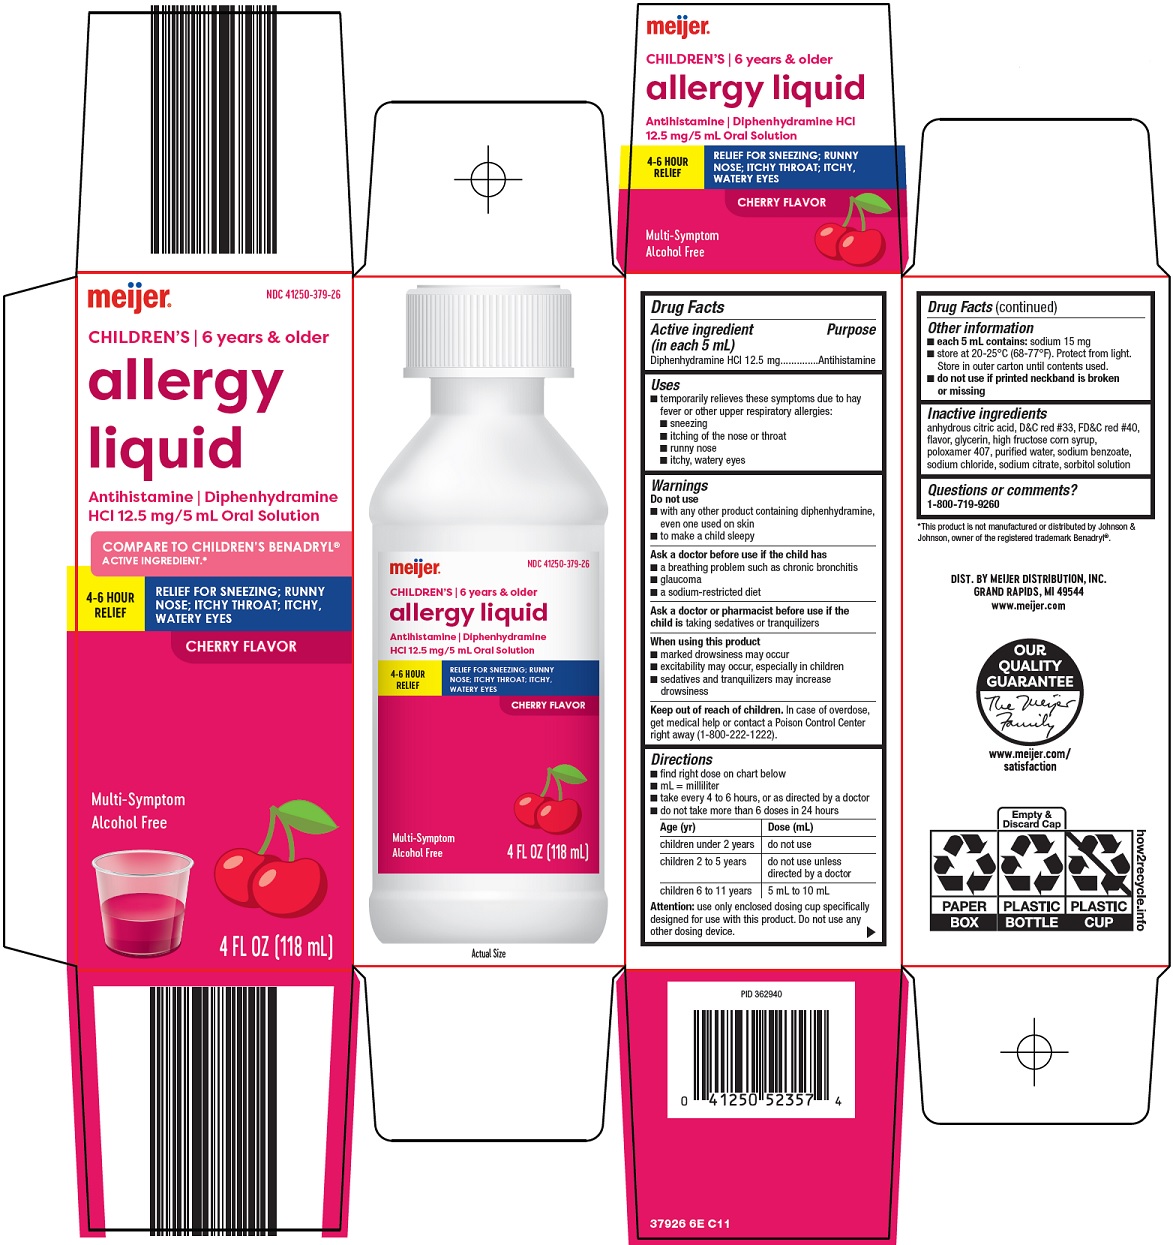 Children's Allergy Liquid Carton